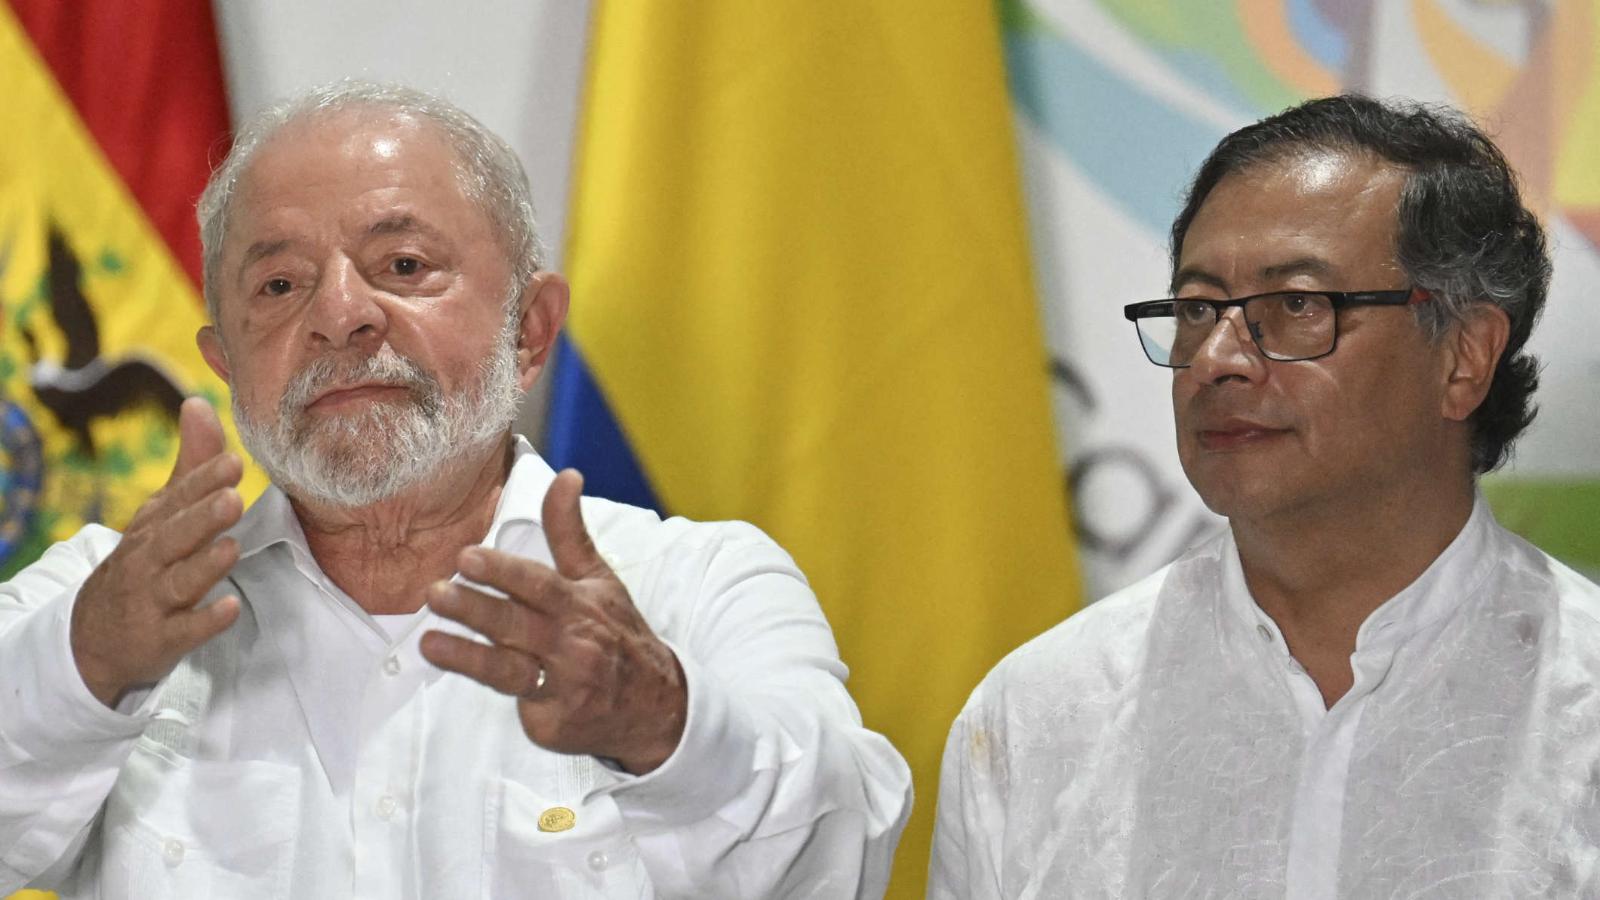 Incumplimiento del acuerdo de Barbados alinea a Lula y Petro en
crítica a Maduro